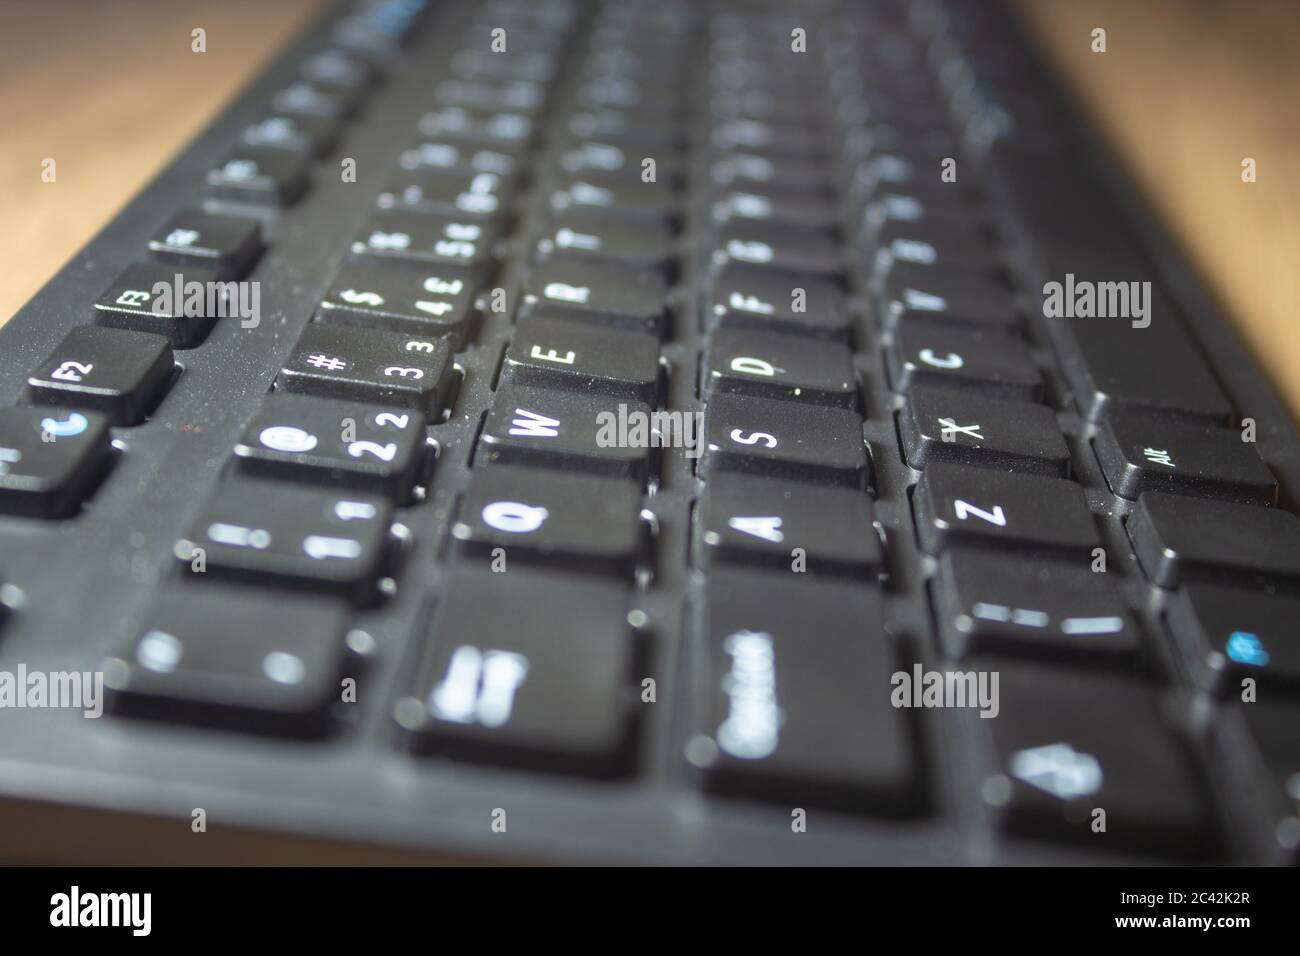 Wireless-Tastatur-Computer. Konzentrieren Sie sich auf die Tasten auf der linken Seite. Stockfoto